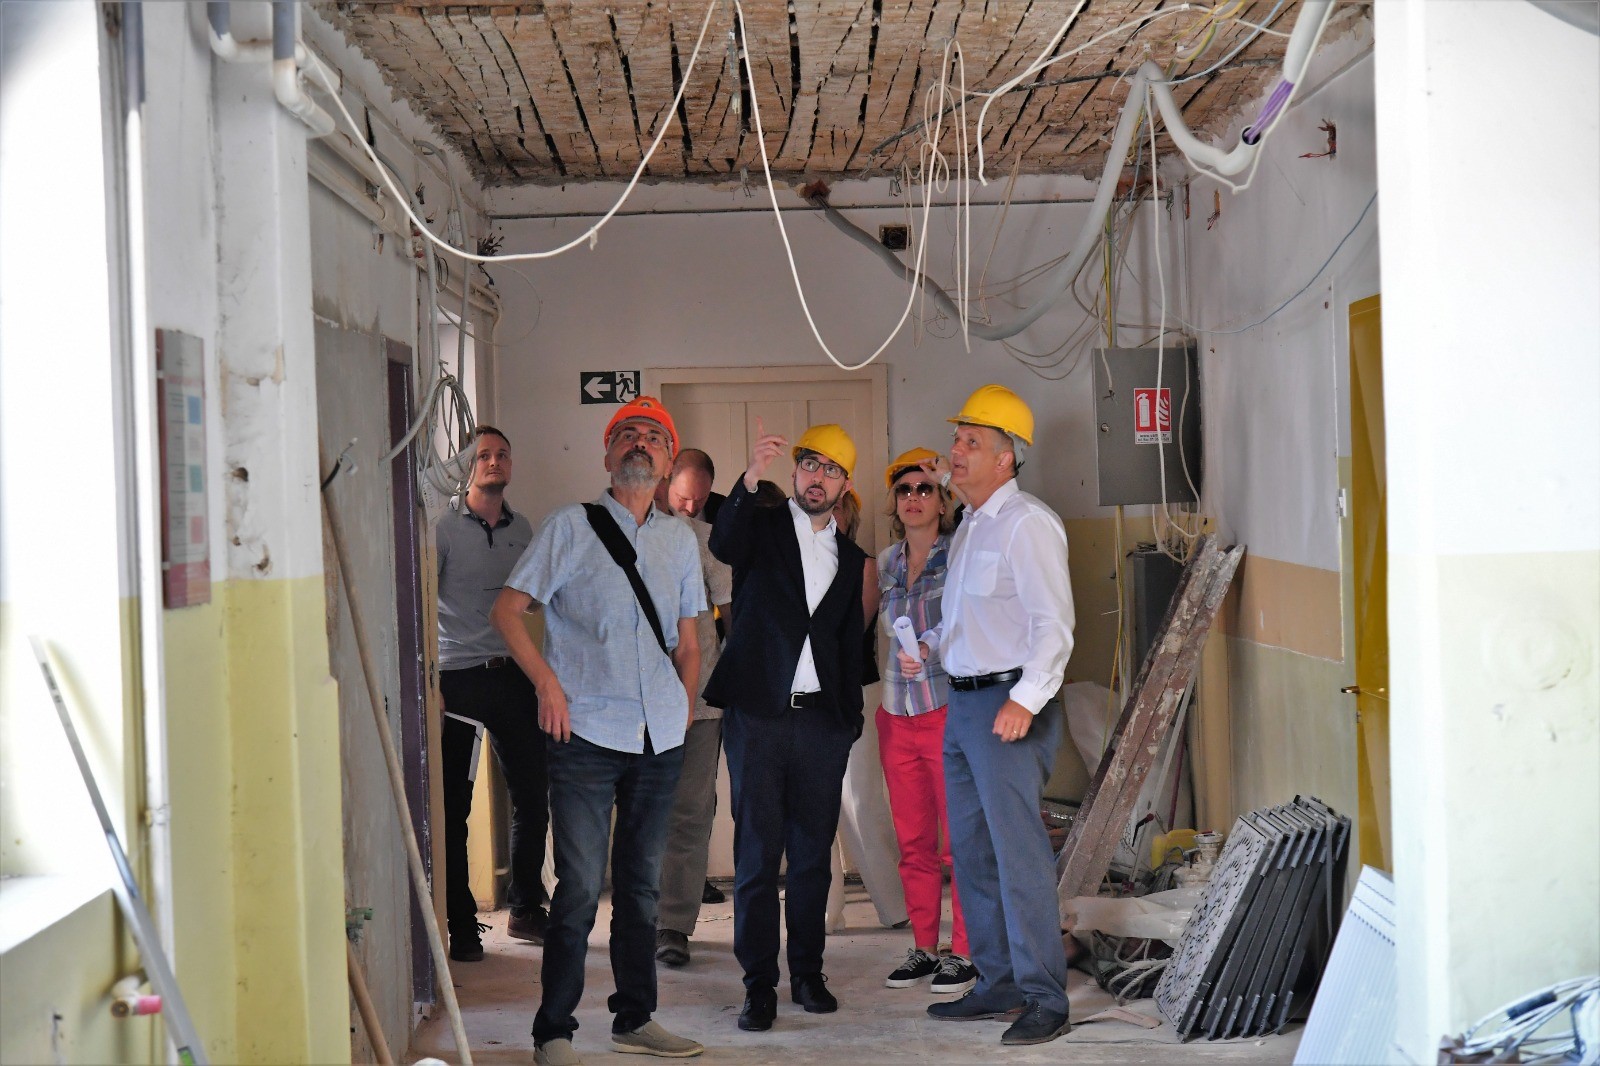 gradonačelnik zagreba tomislav tomašević sa zamjenicim ai radnicima unutar škole u kojoj su radovi, prstom pokazuje na žice koje vise sa stropa